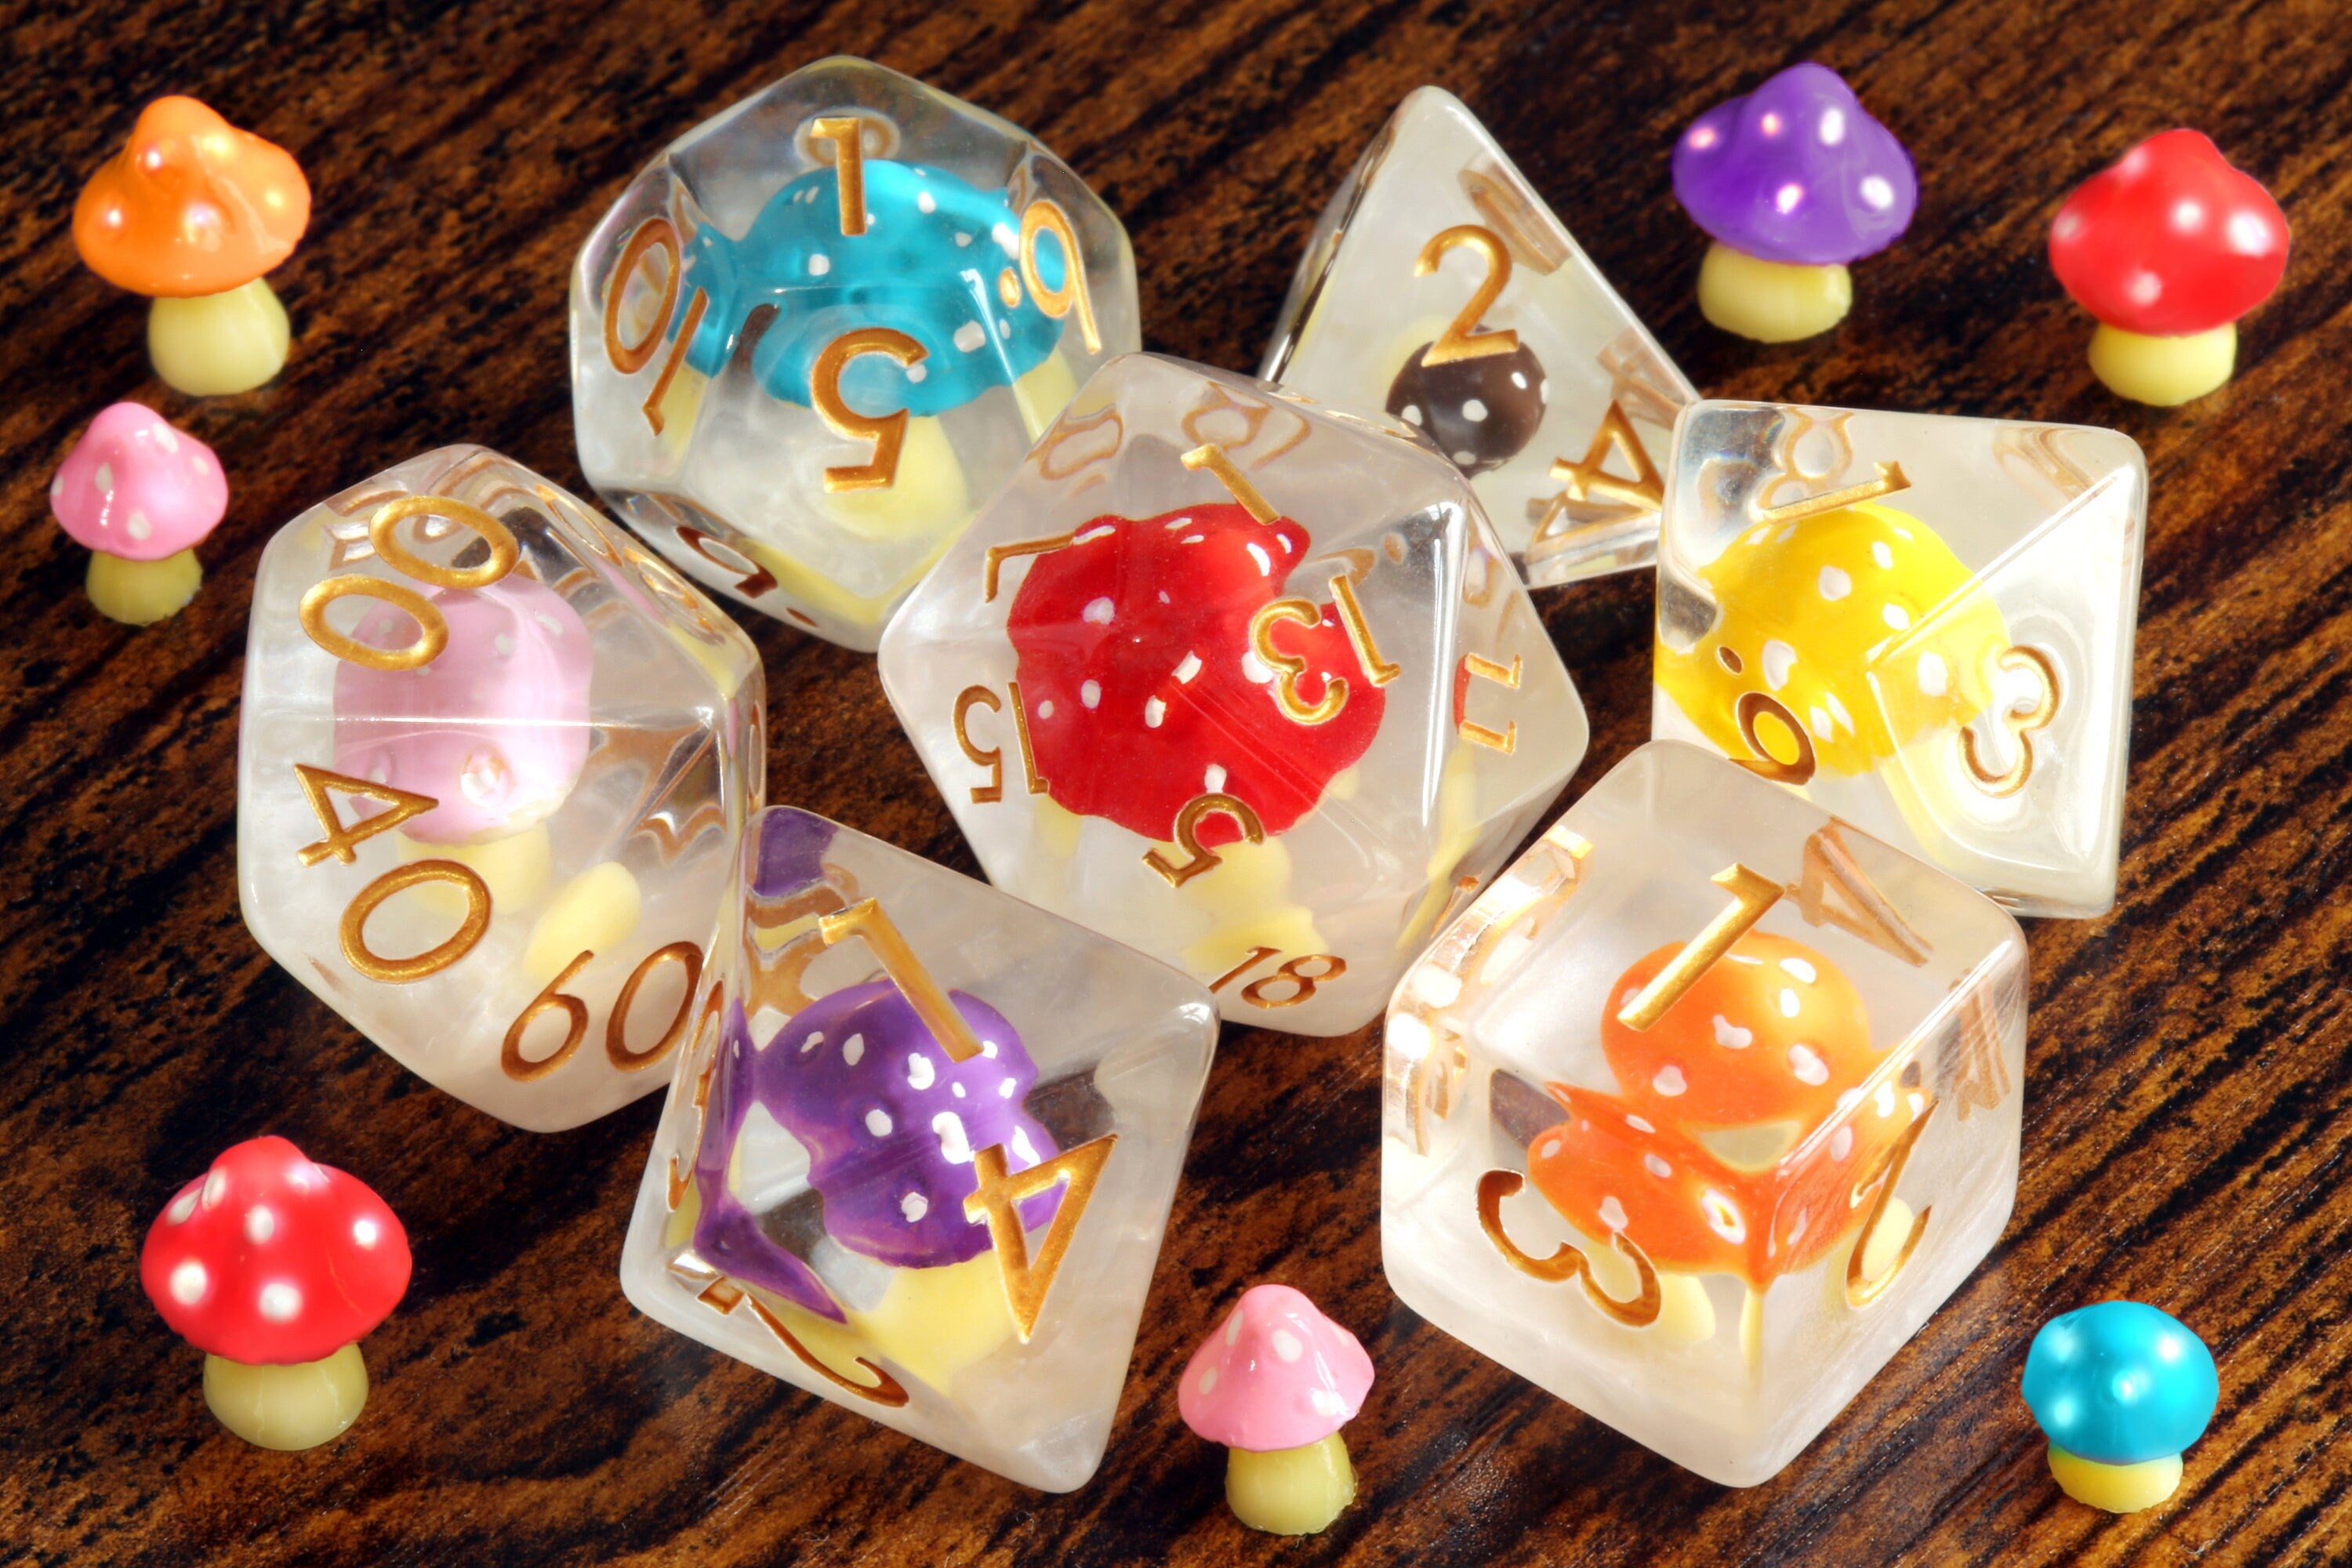 Mushroom Familly dice box and Multicolored Mushroom dice set